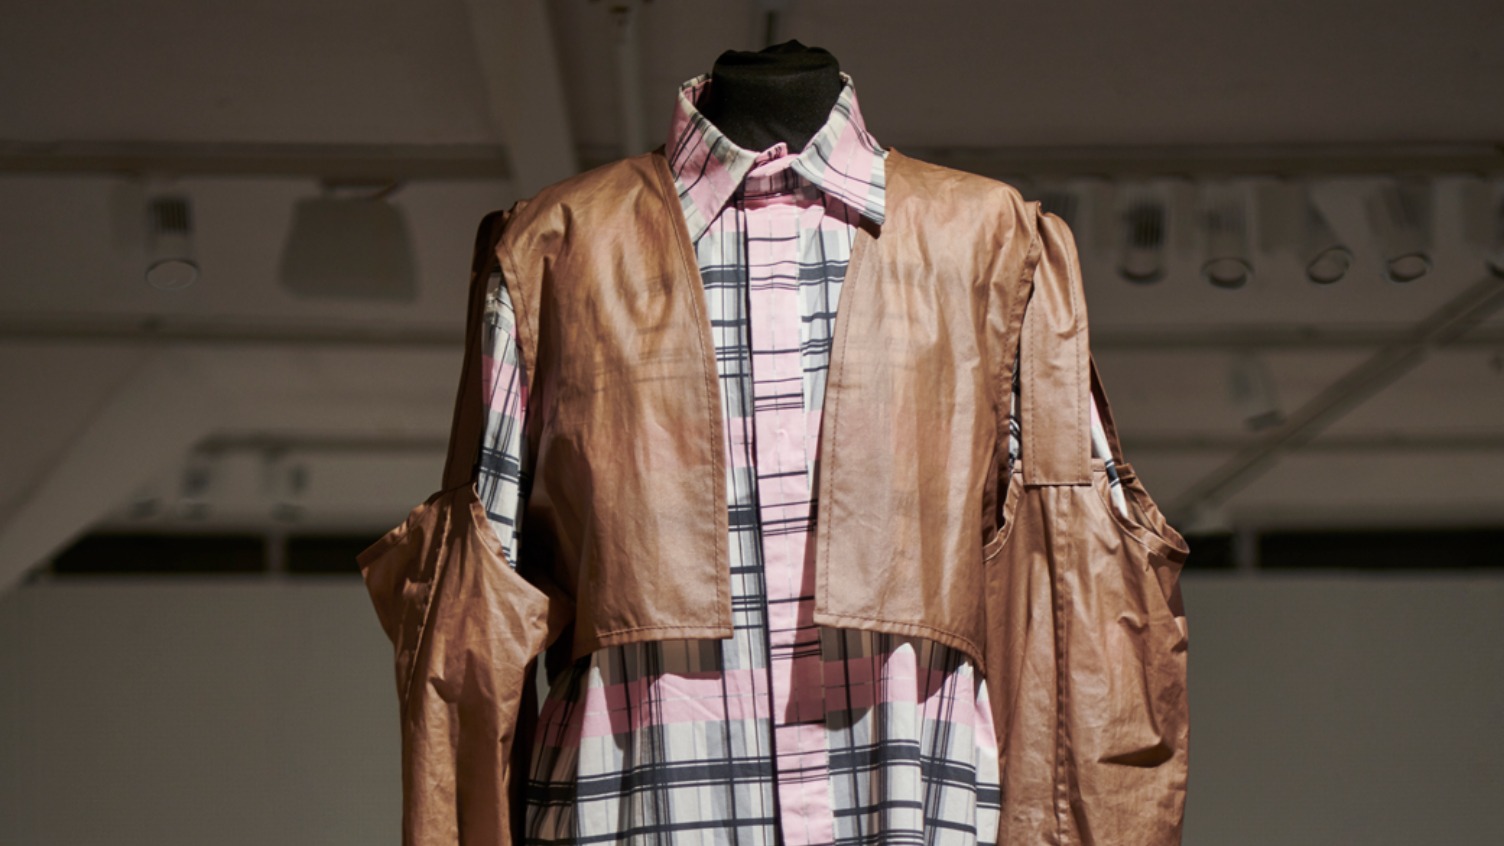 Ein grau-rosa kariertes, langes Hemd und eine Hose sowie eine braune, halbdurchsichtige, zertrennte Jacke mit zahlreichen Taschen.